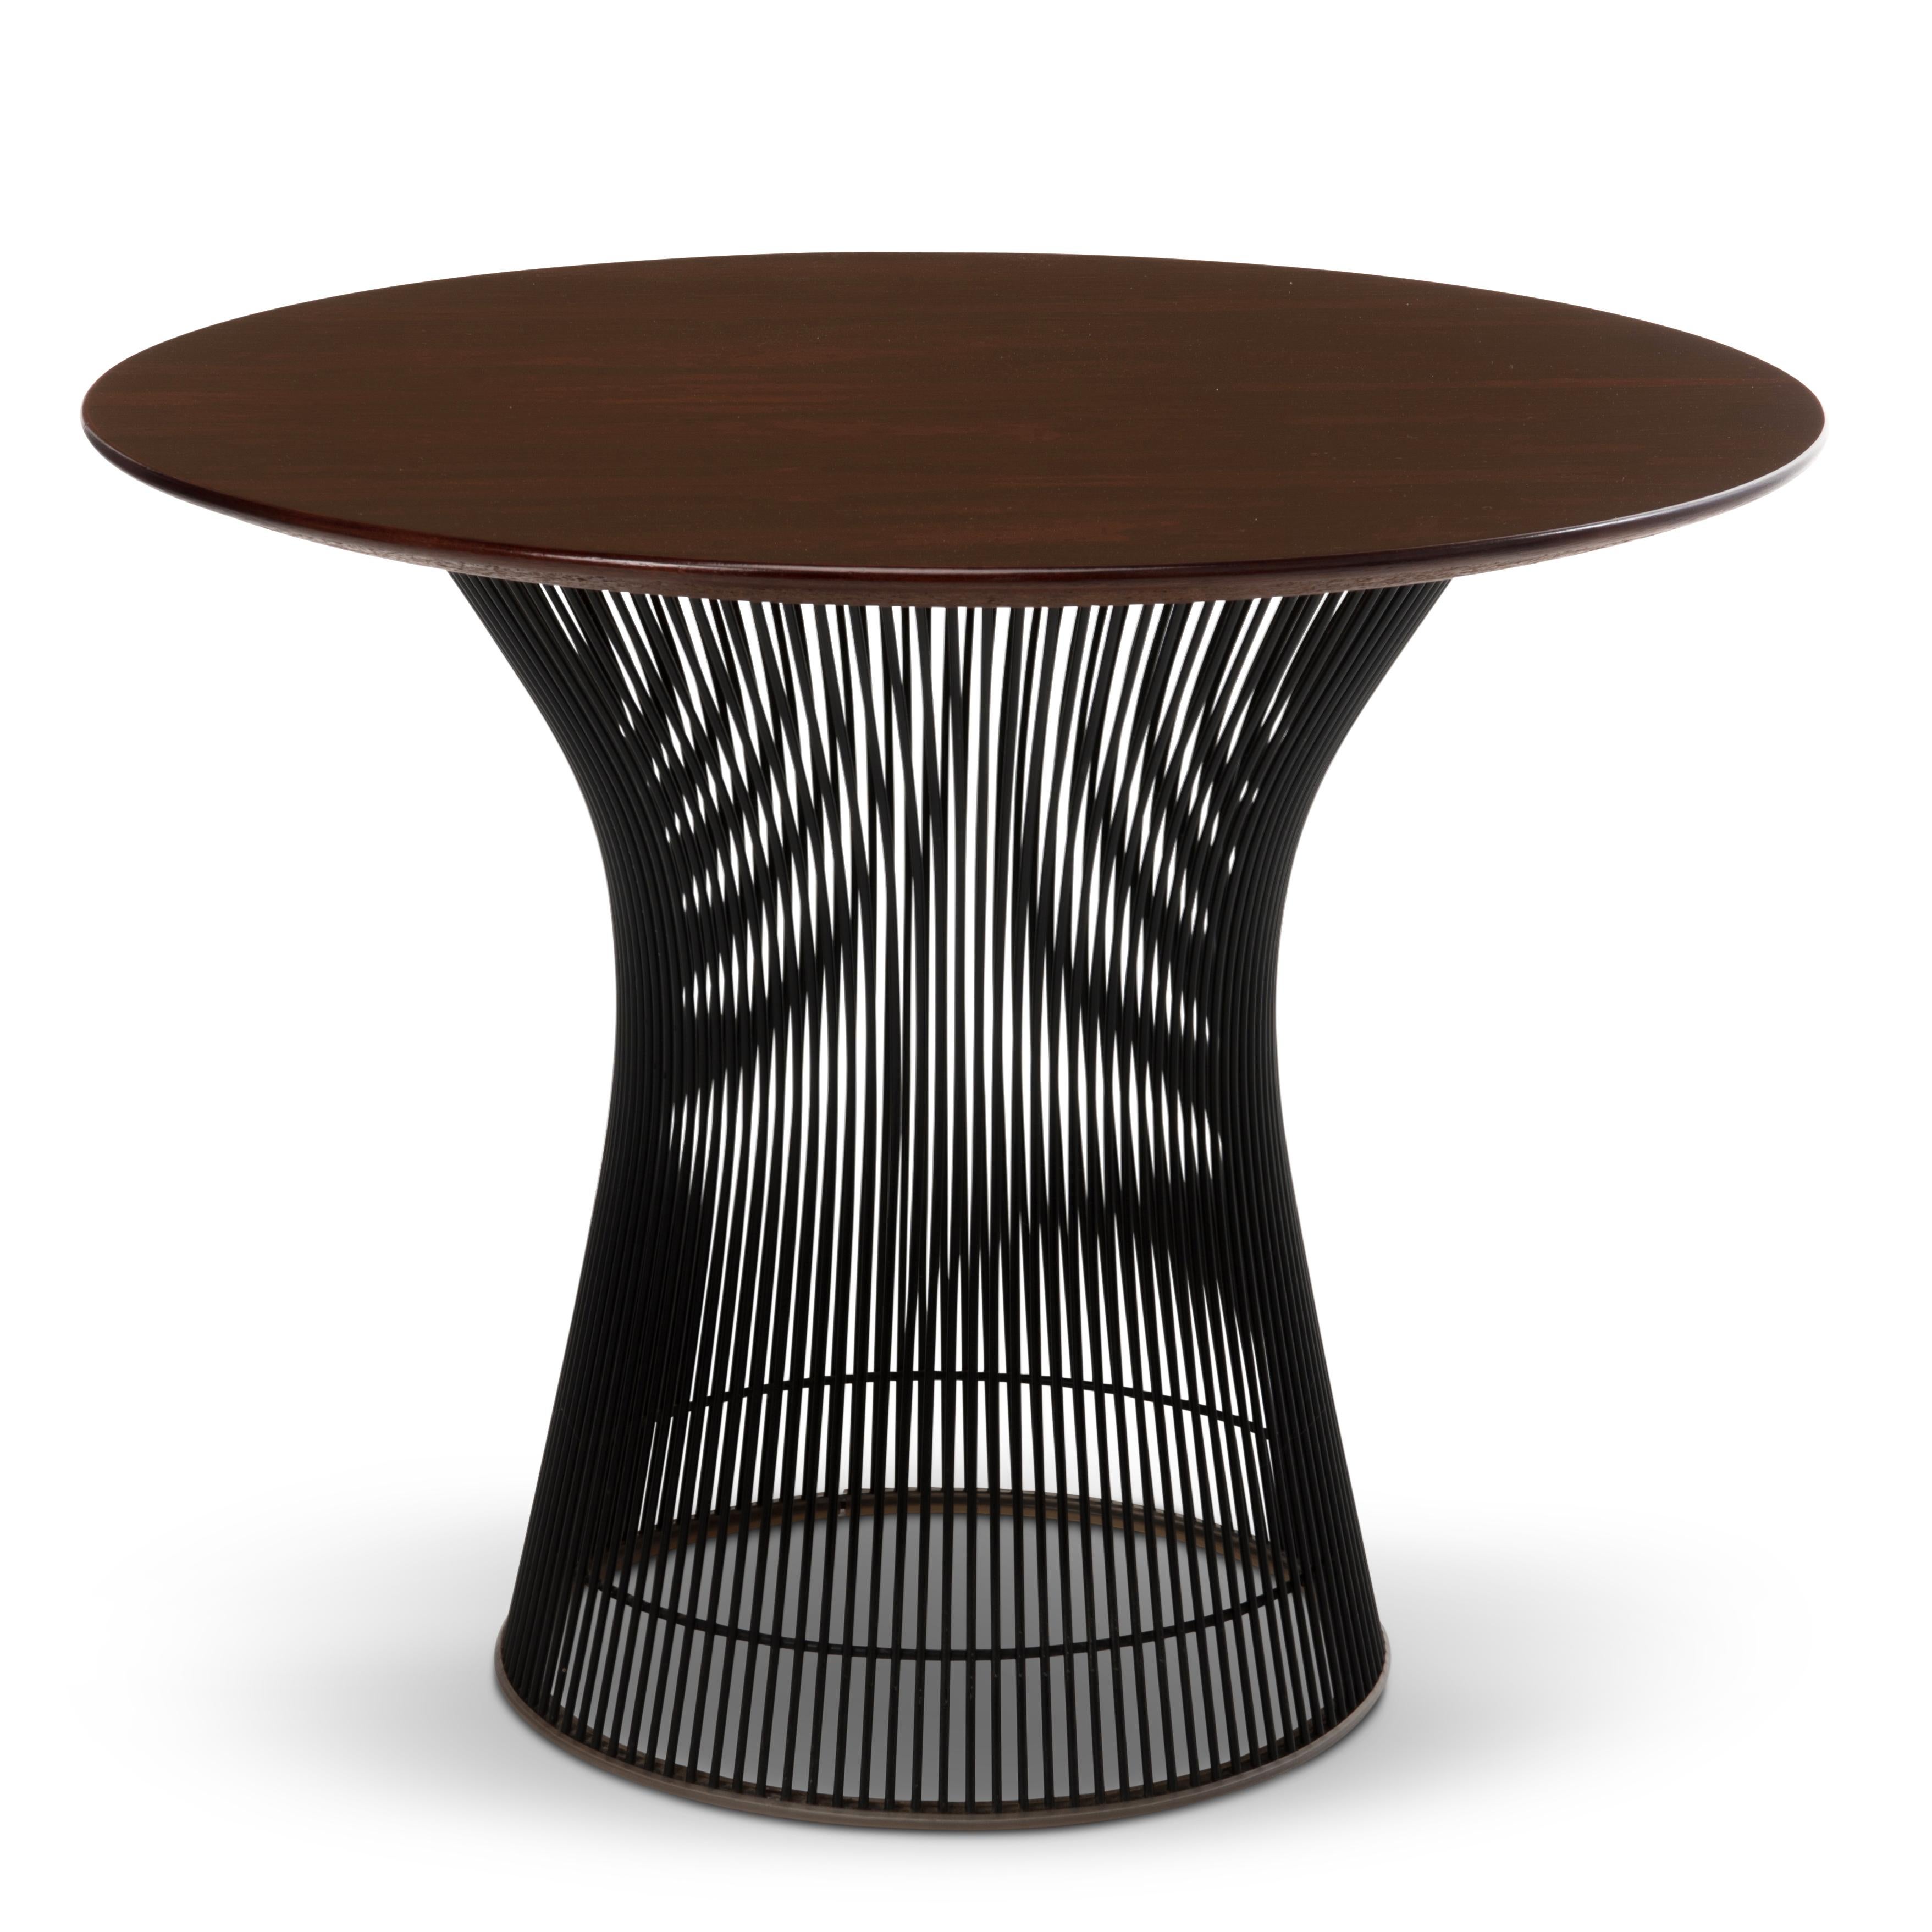 Wunderschöner Beistelltisch aus Palisanderholz und schwarzem Sockel aus den 1970er Jahren, entworfen von Warren Platner für Knoll Associates aus dem Nachlass eines Knoll-Mitarbeiters in East Greenville, PA. 

Das letzte Foto zeigt diesen Tisch auf